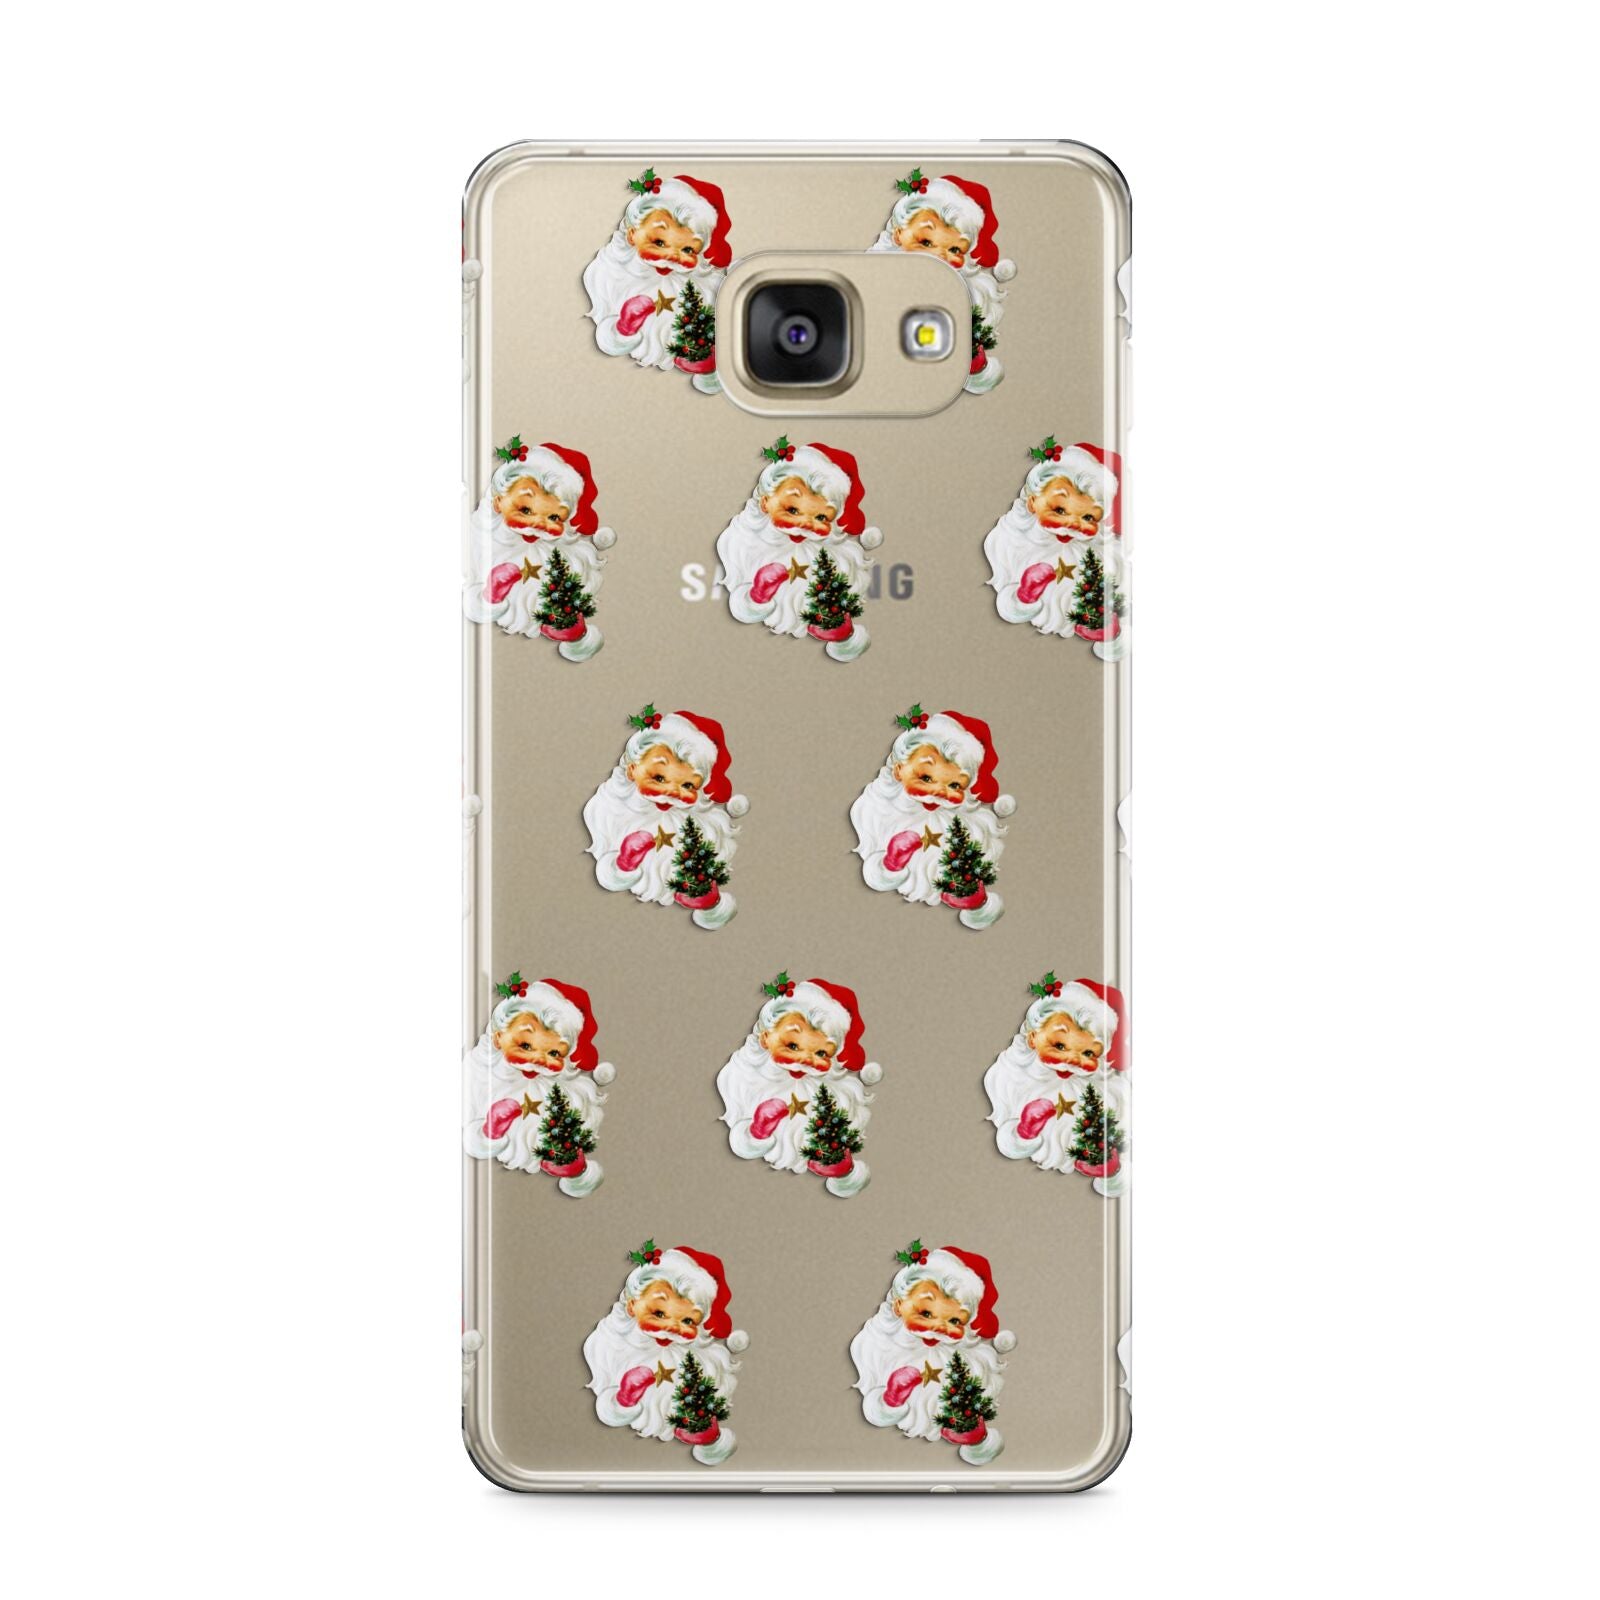 Retro Santa Face Samsung Galaxy A9 2016 Case on gold phone